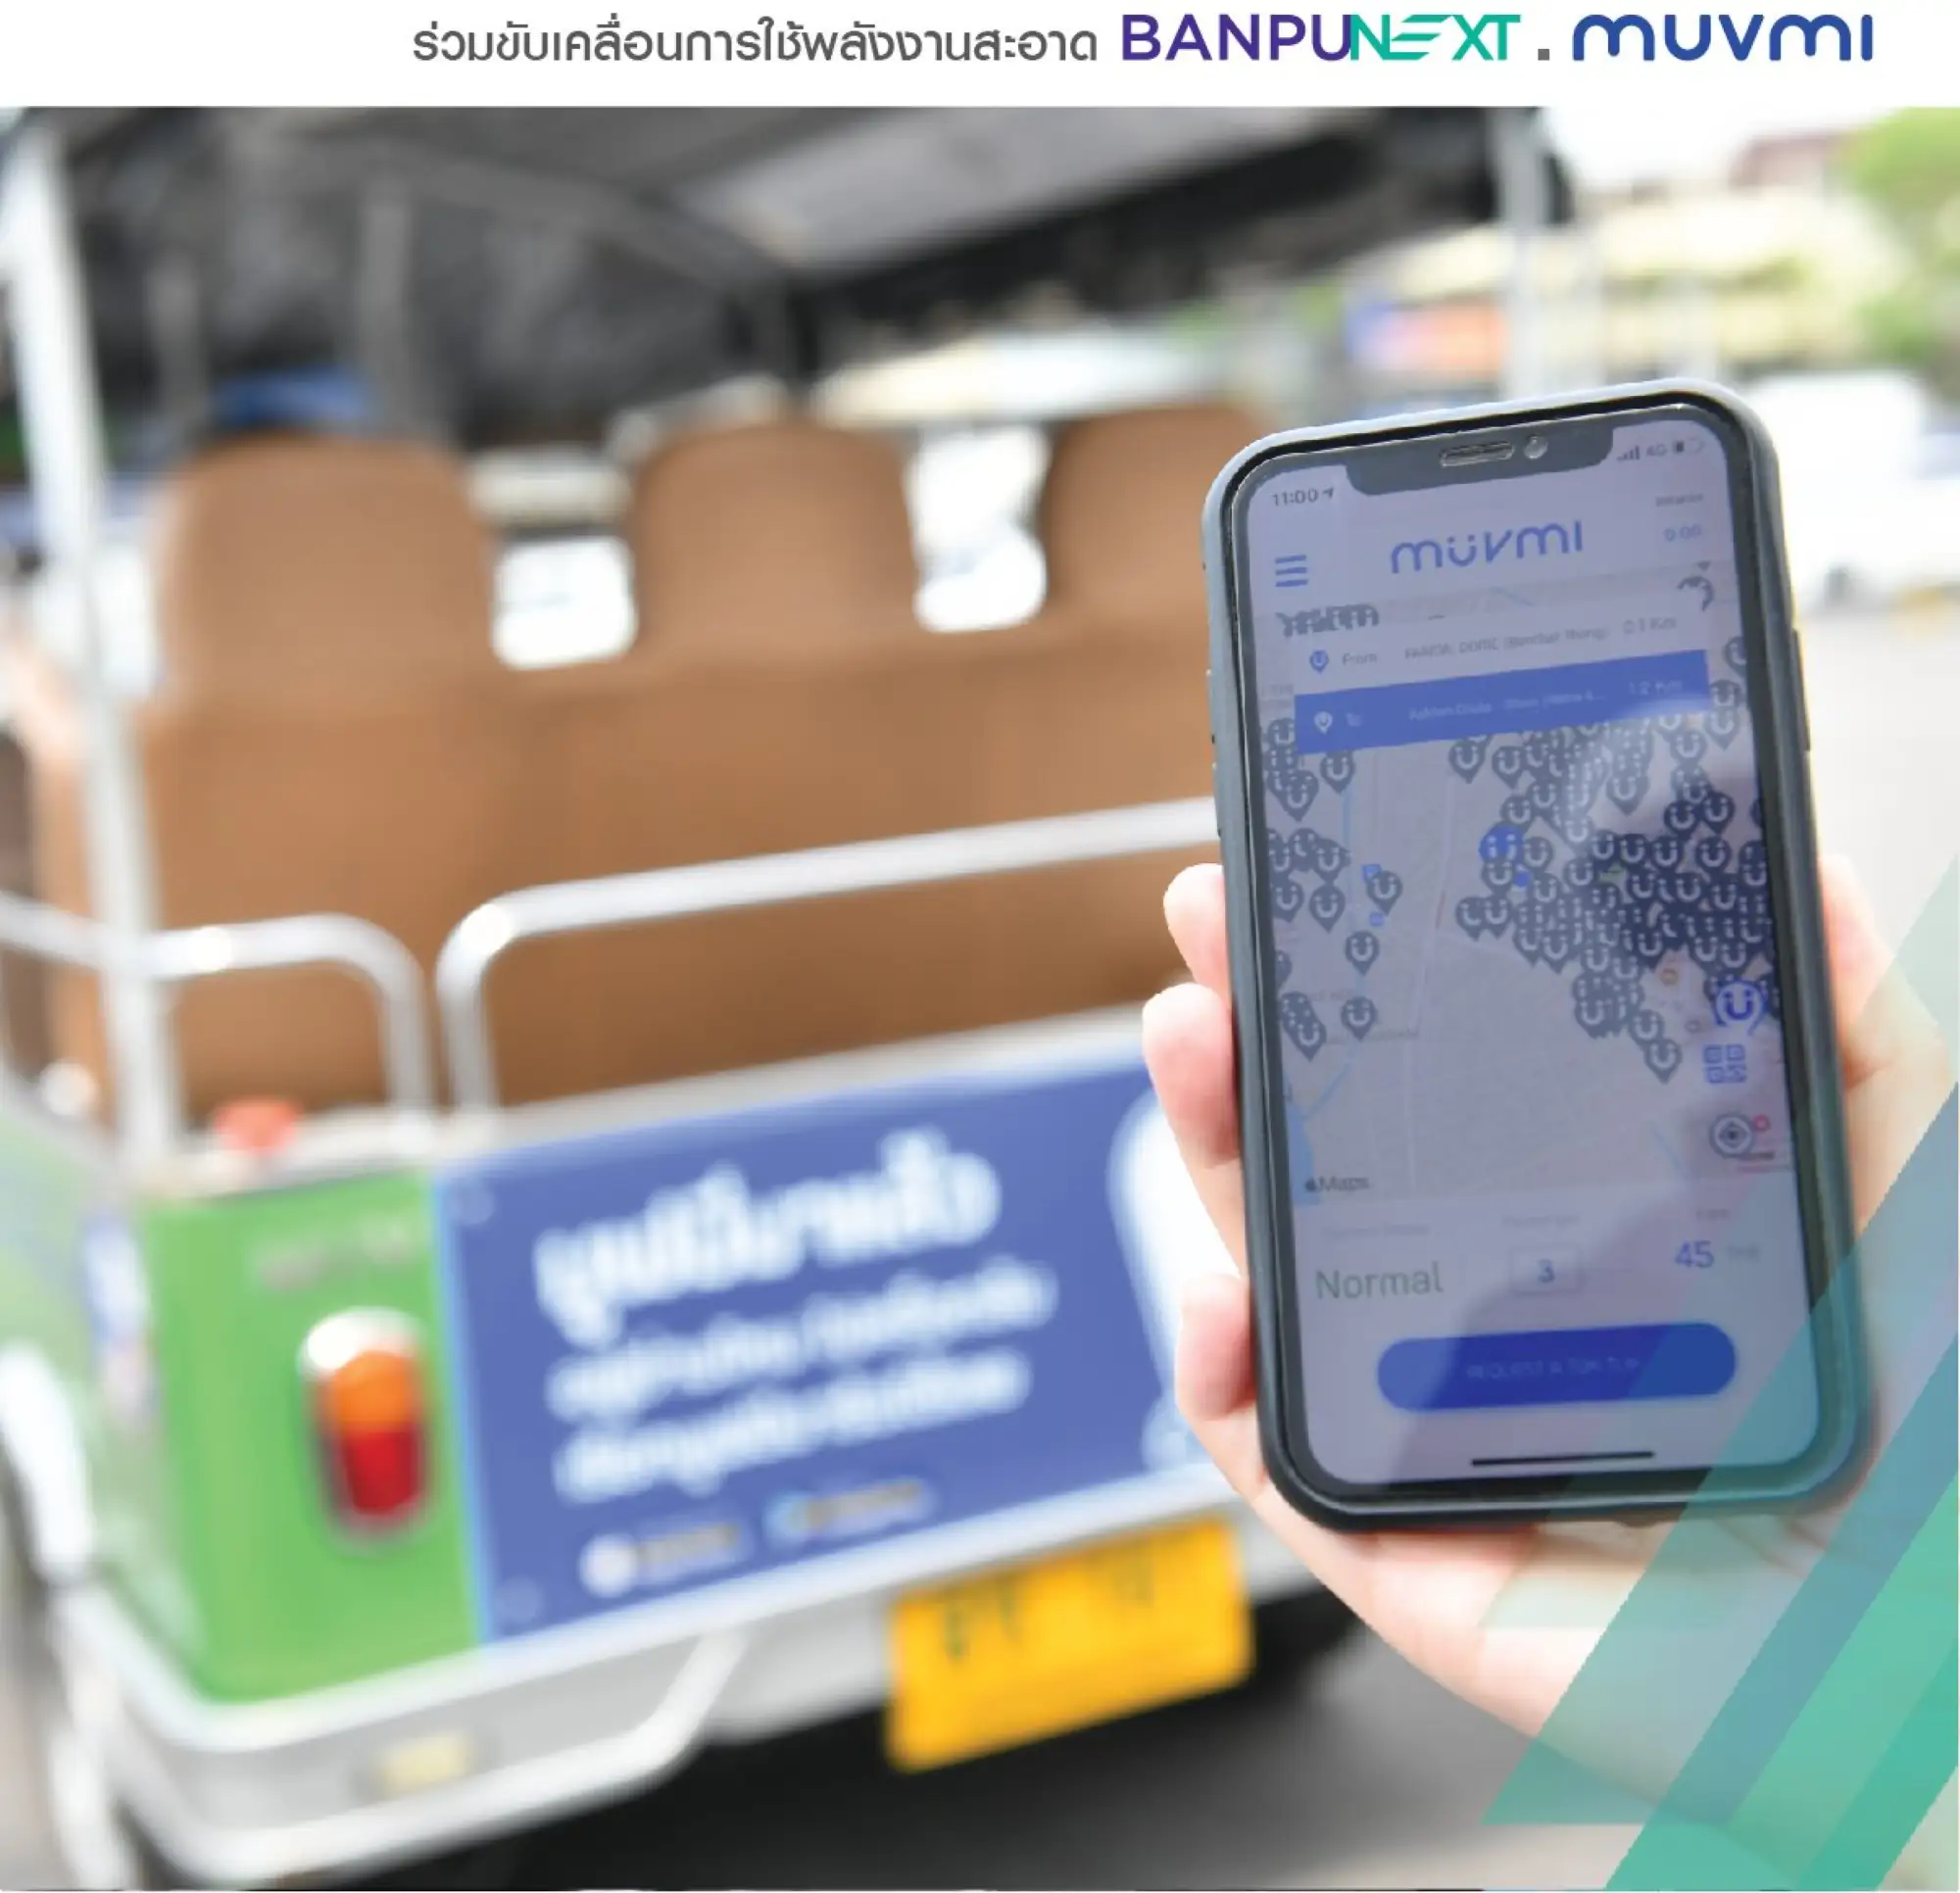 乘客要使用 MuvMi 嘟嘟車共乘服務，手機必須先下載APP（圖片來源：@muvmi臉書粉專）